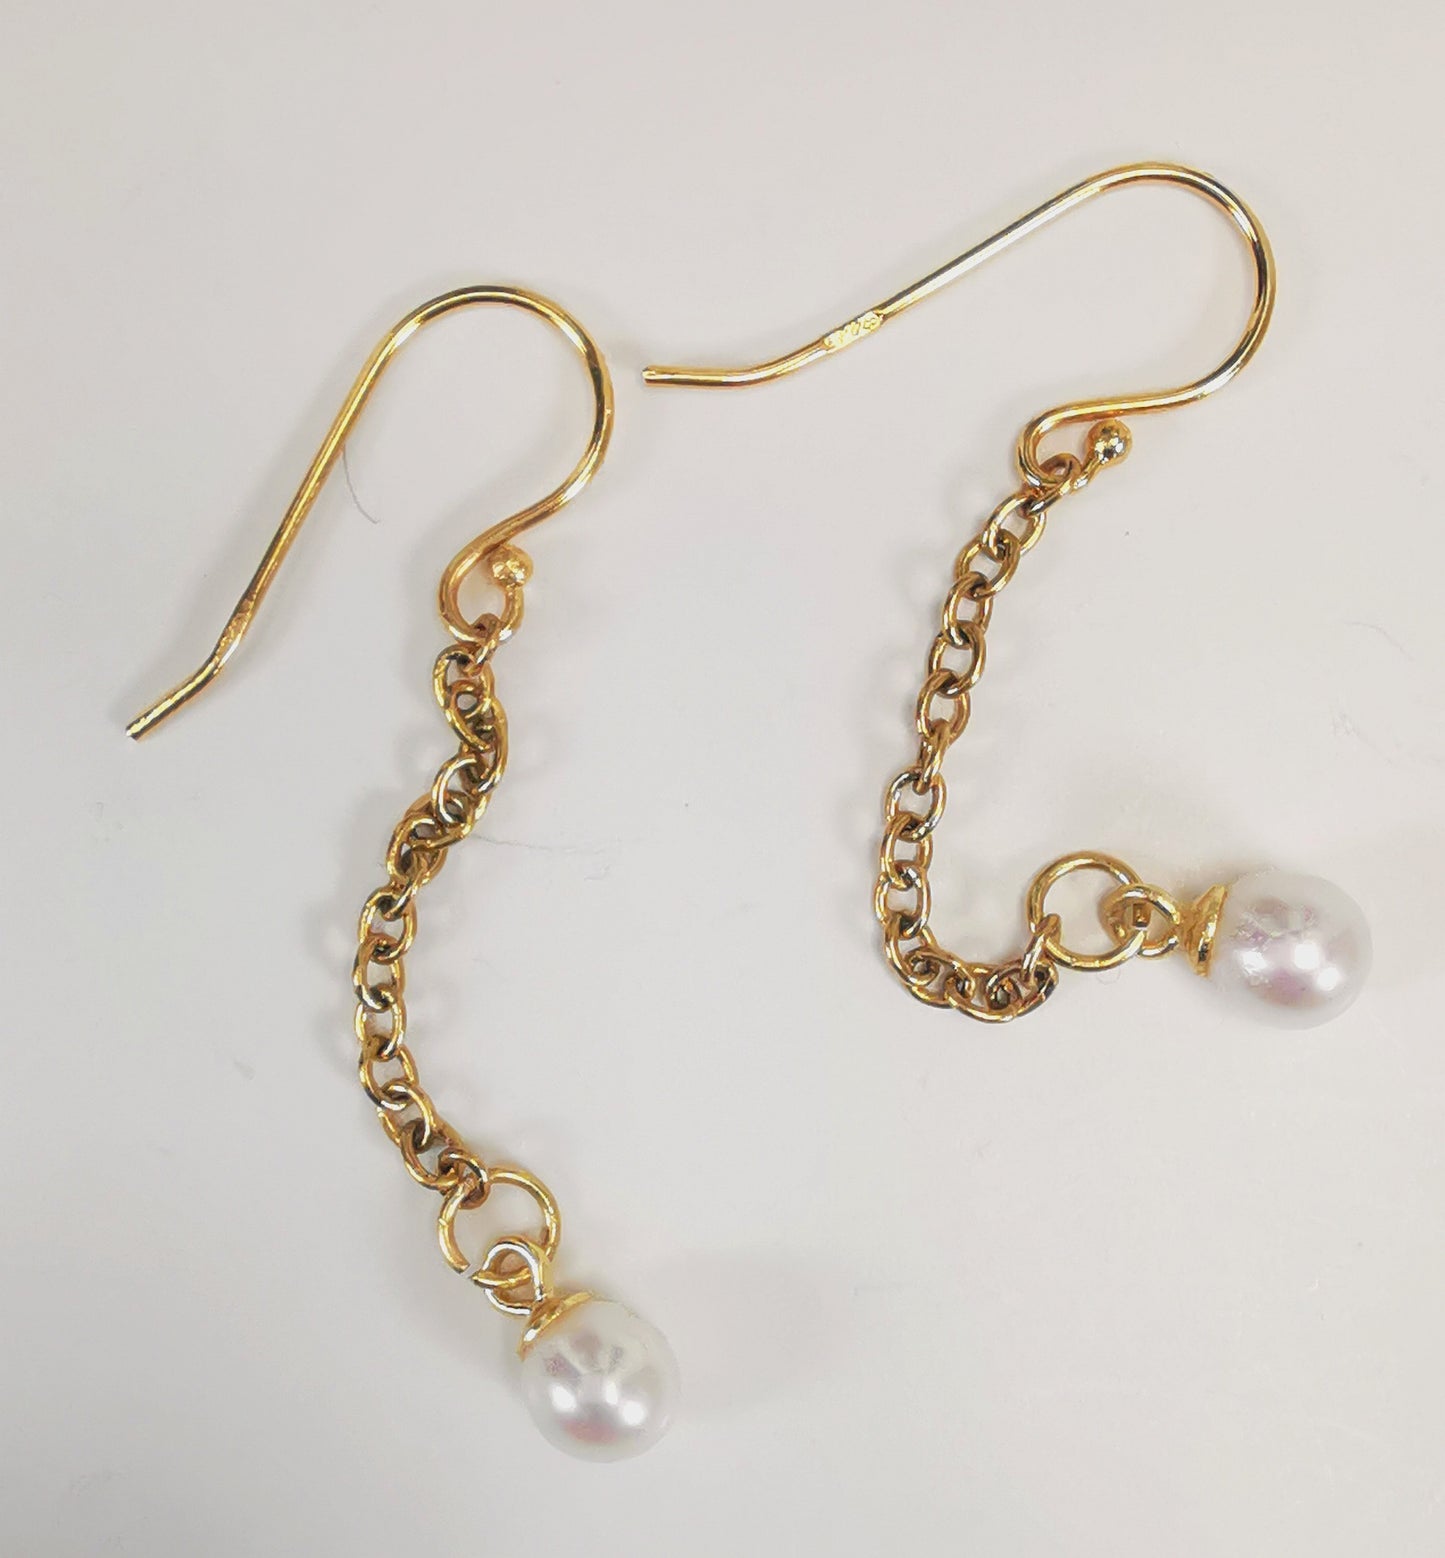 Boucles d'oreilles perles de culture blanches rondes 5mm sur pendants et chaînes plaqués or. Présentées cote à cote, boucle de gauche décalée vers le haut, les deux chaines détendues, sur fond blanc. Vue de dessus.